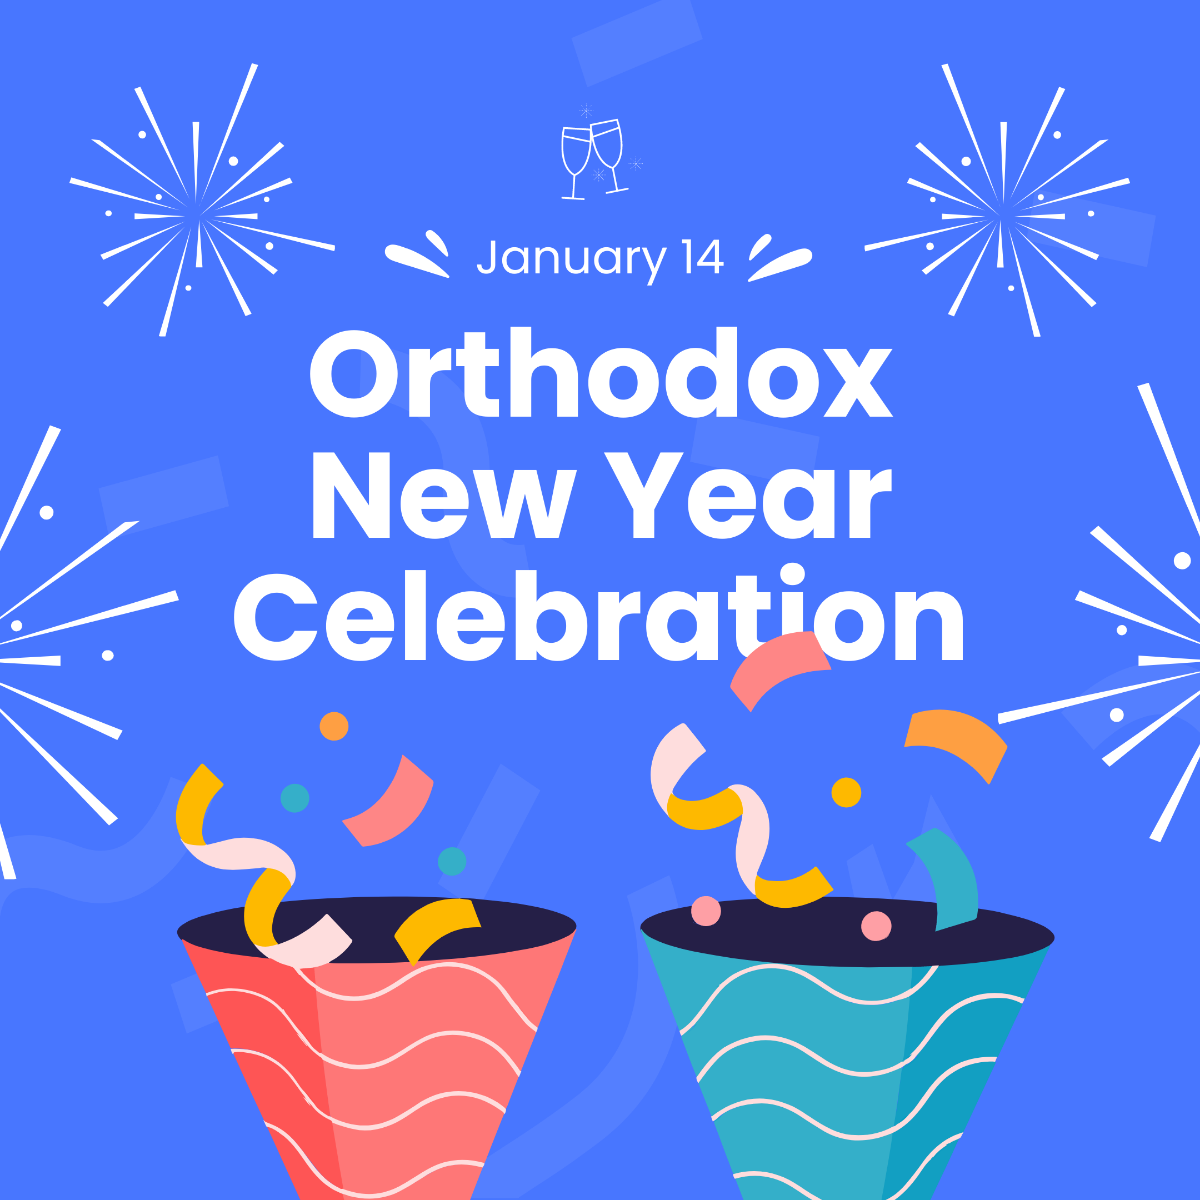 Orthodox New Year Celebration Instagram Post